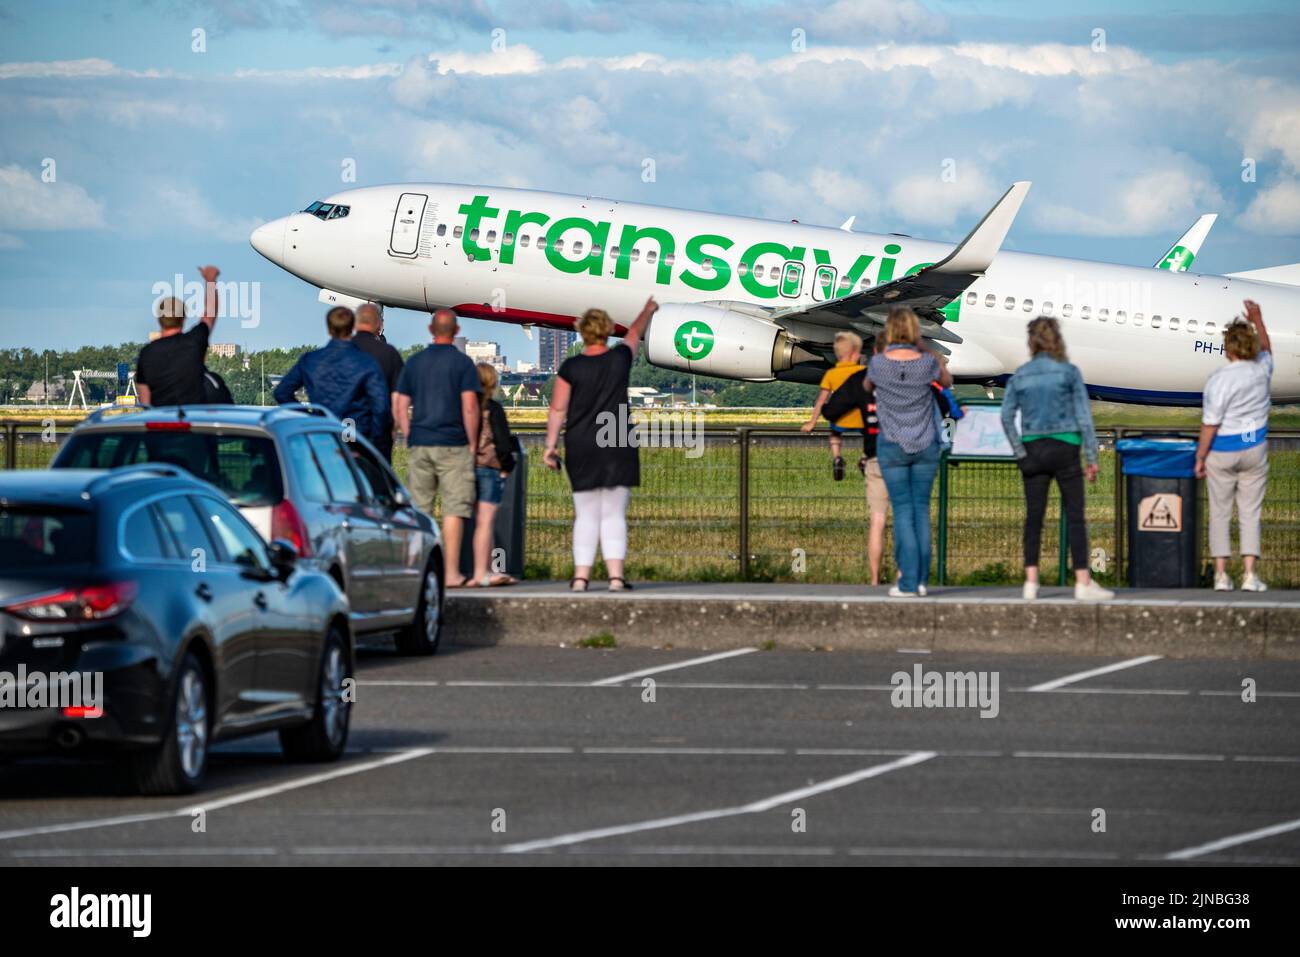 Amsterdam Shiphol Airport, Polderbaan, una de las 6 pistas, spotter spot, ver los aviones de cerca, PH-HXN, Transavia Boeing 737-800 Foto de stock